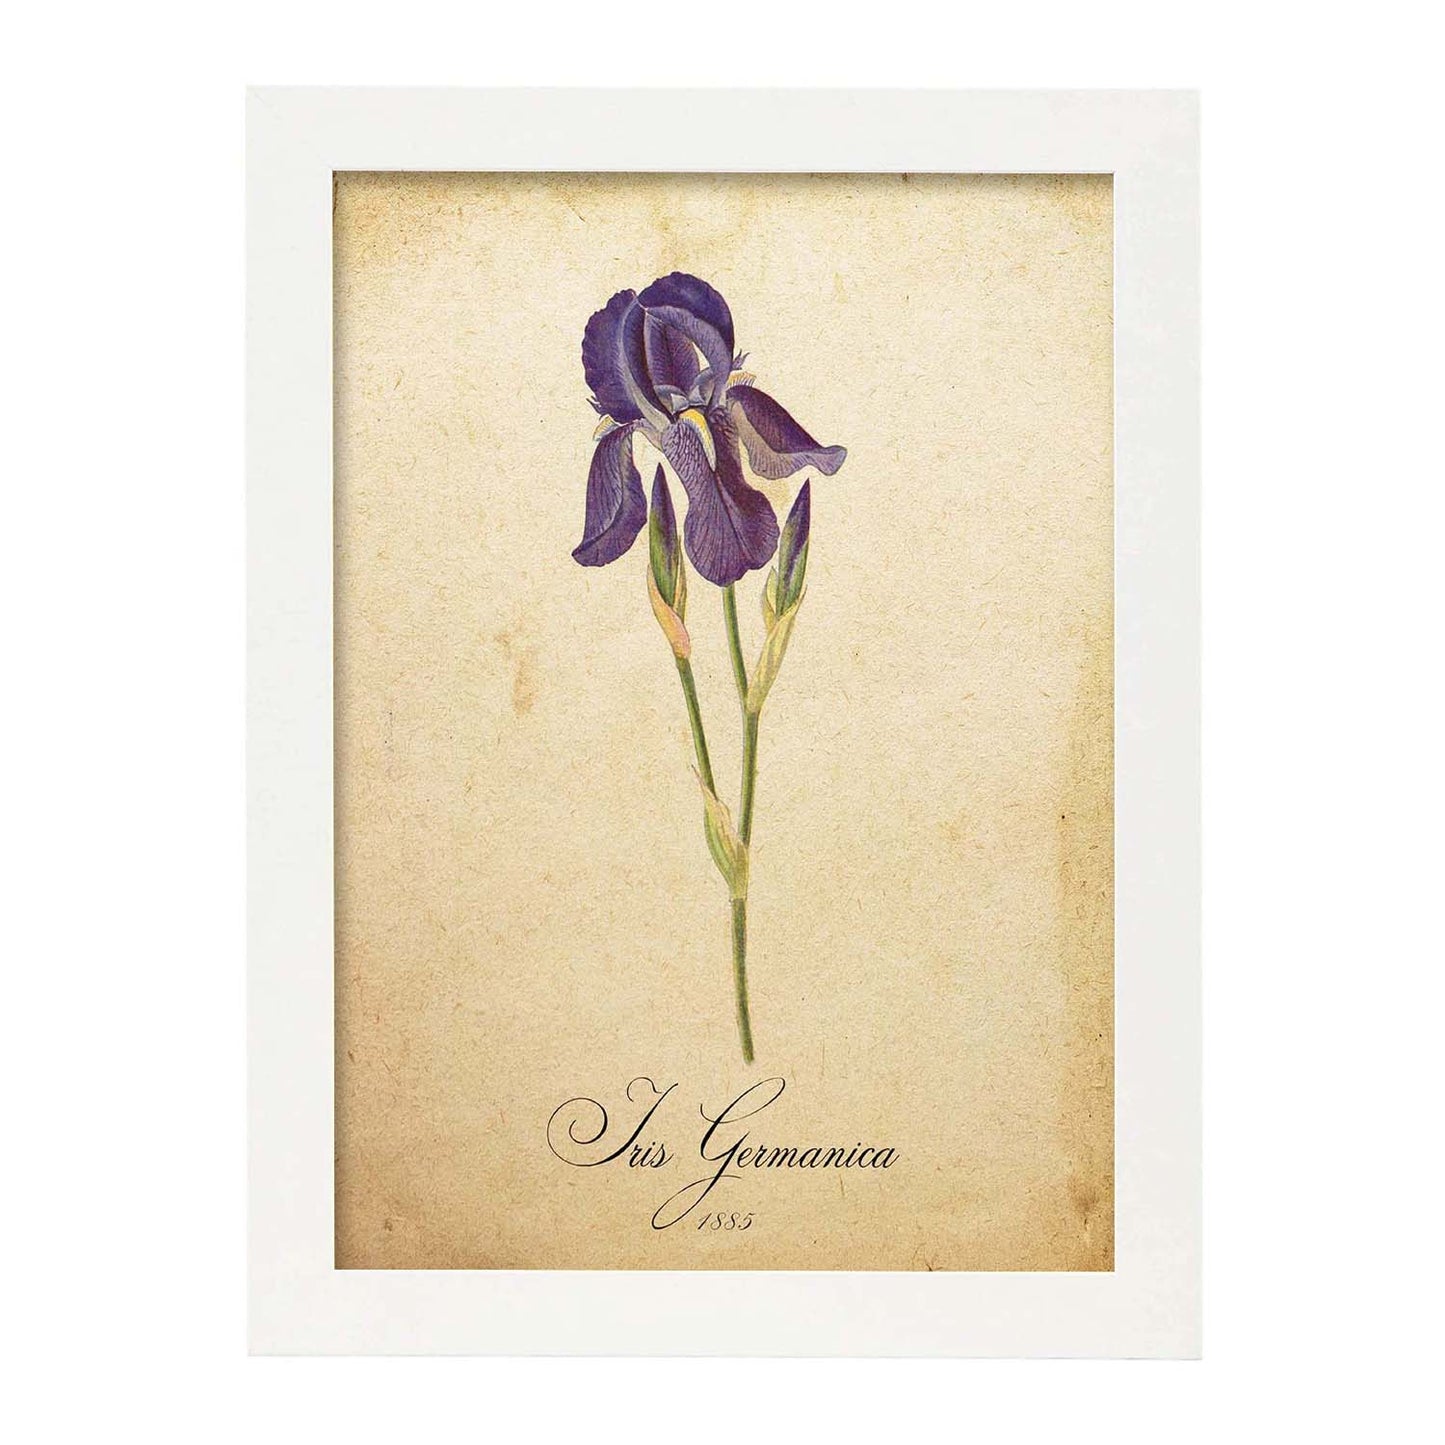 Poster de flores vintage. Lámina Iris germanica con diseño vintage.-Artwork-Nacnic-A3-Marco Blanco-Nacnic Estudio SL